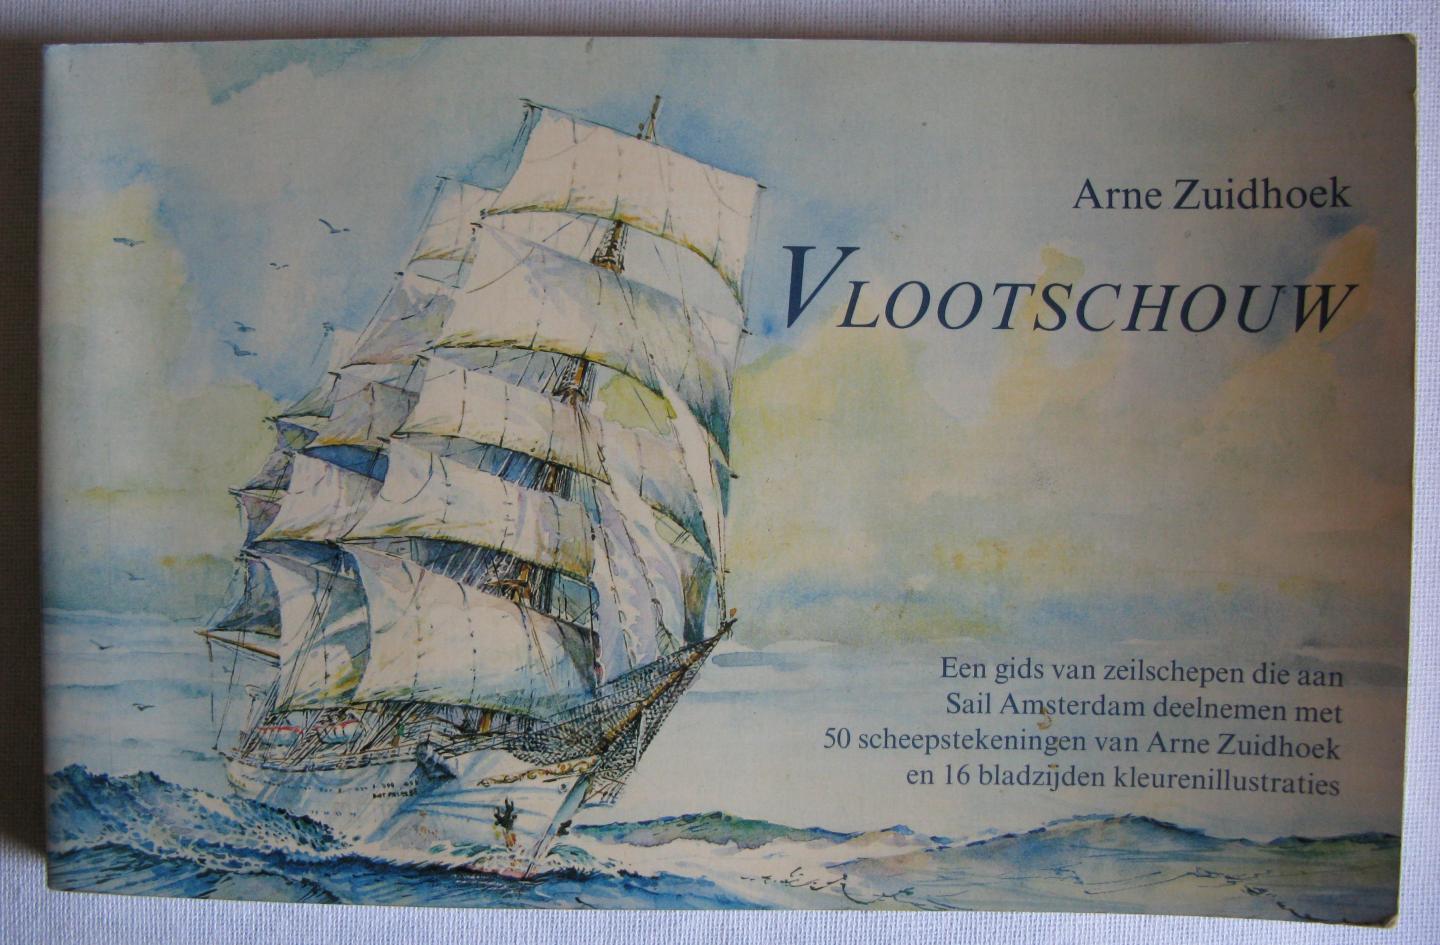 Zuidhoek, Arne - Vlootschouw / Een gids van zeilschepen die aan Sail Amsterdam deelnemen met 50 Scheepstekeningen van Arne Zuidhoek en 16 bladzijden kleurenillustraties